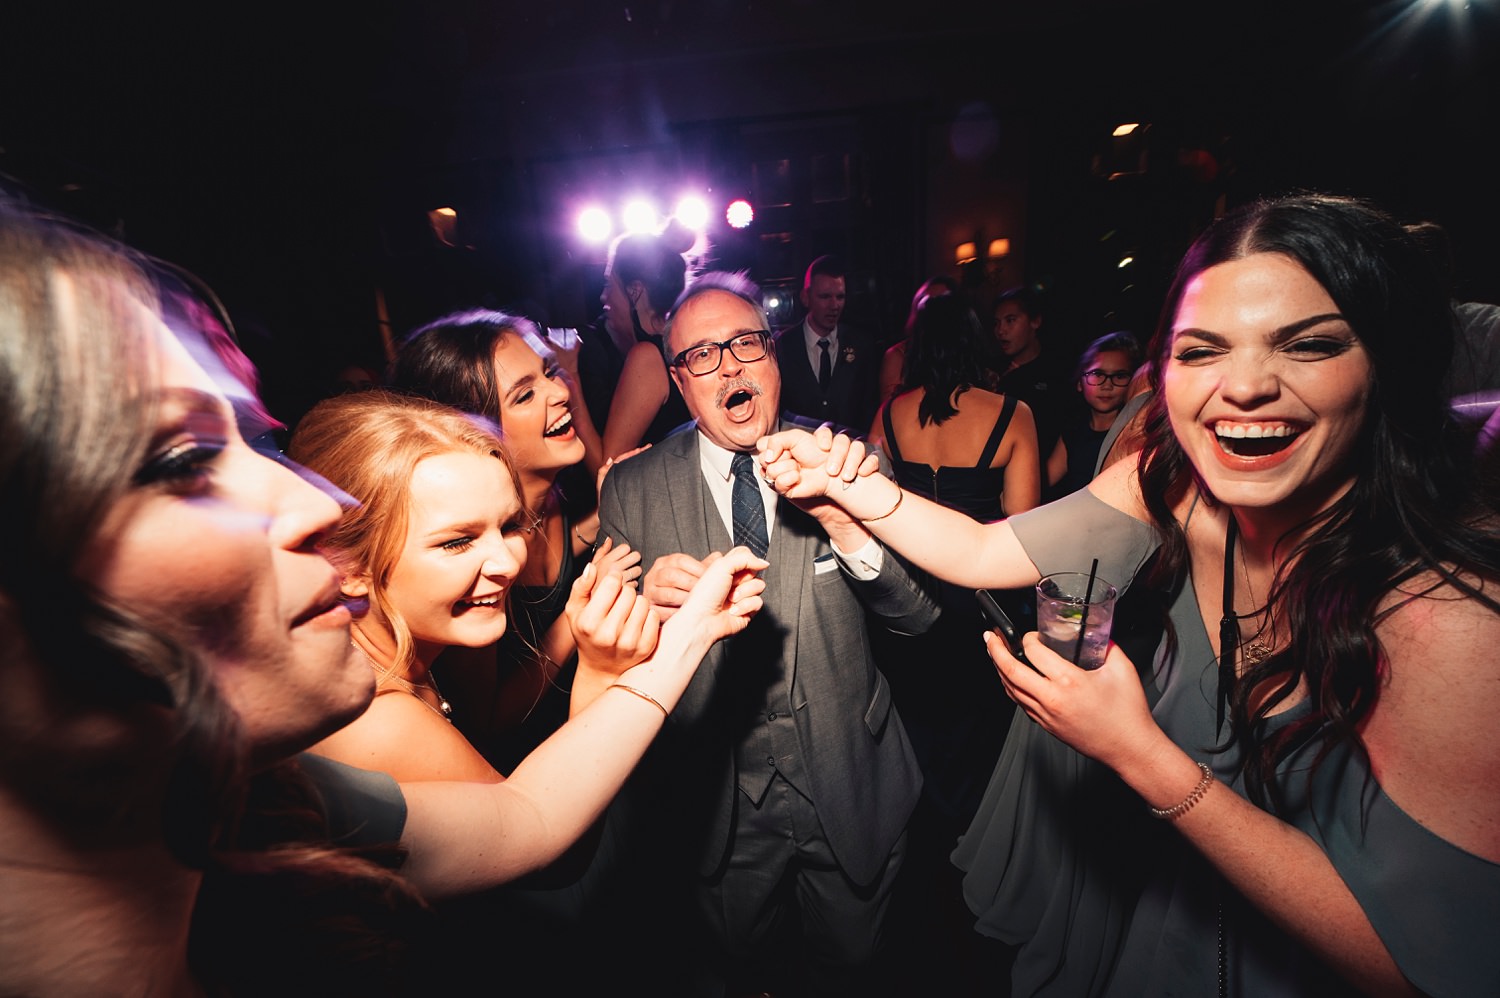 Salvatore's Chicago Wedding - Salvatore's Chicago, reception, dance party